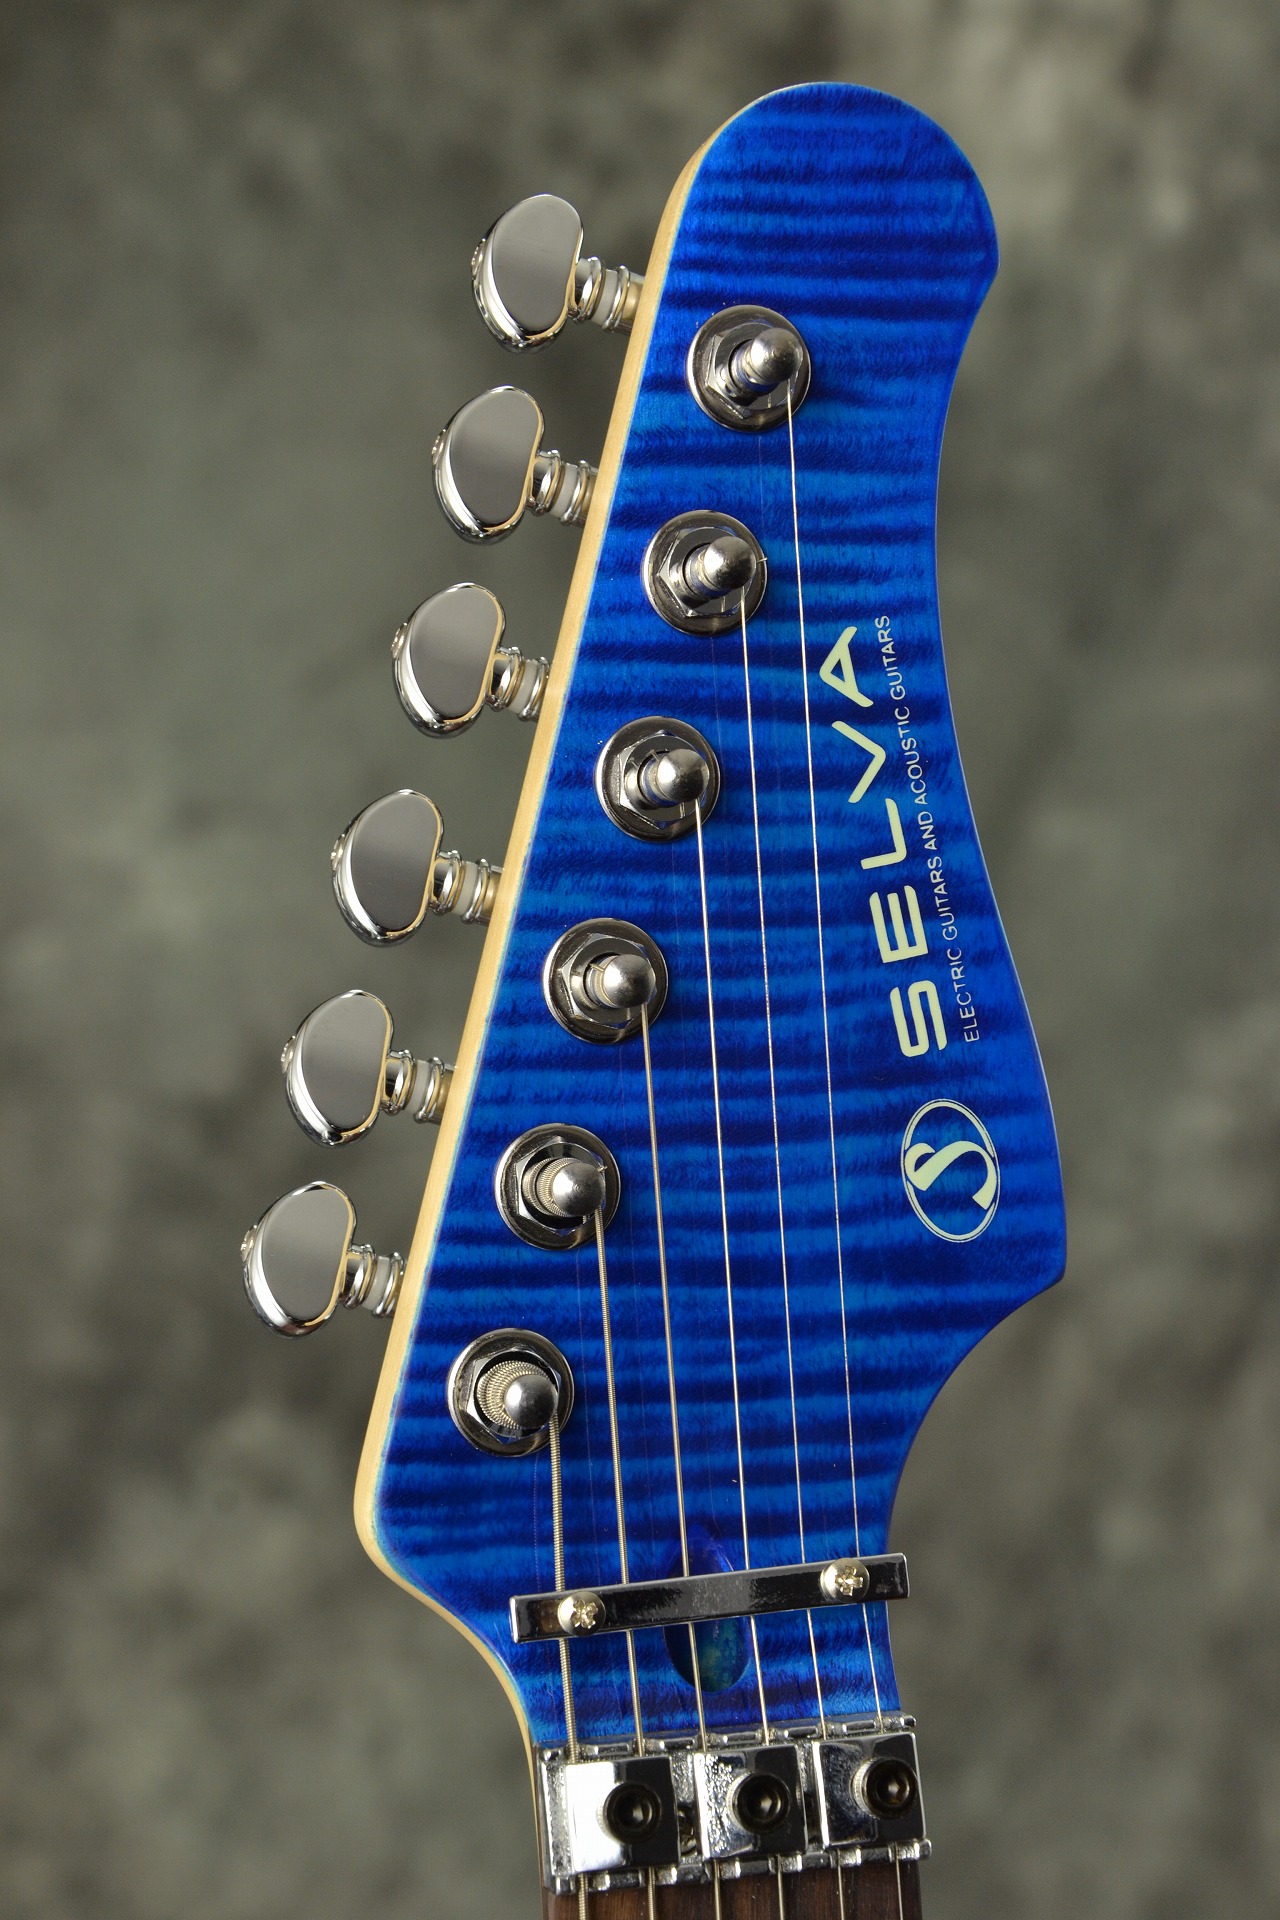 石橋楽器 オリジナルブランド SELVA ギターセット エレキギター - 楽器 